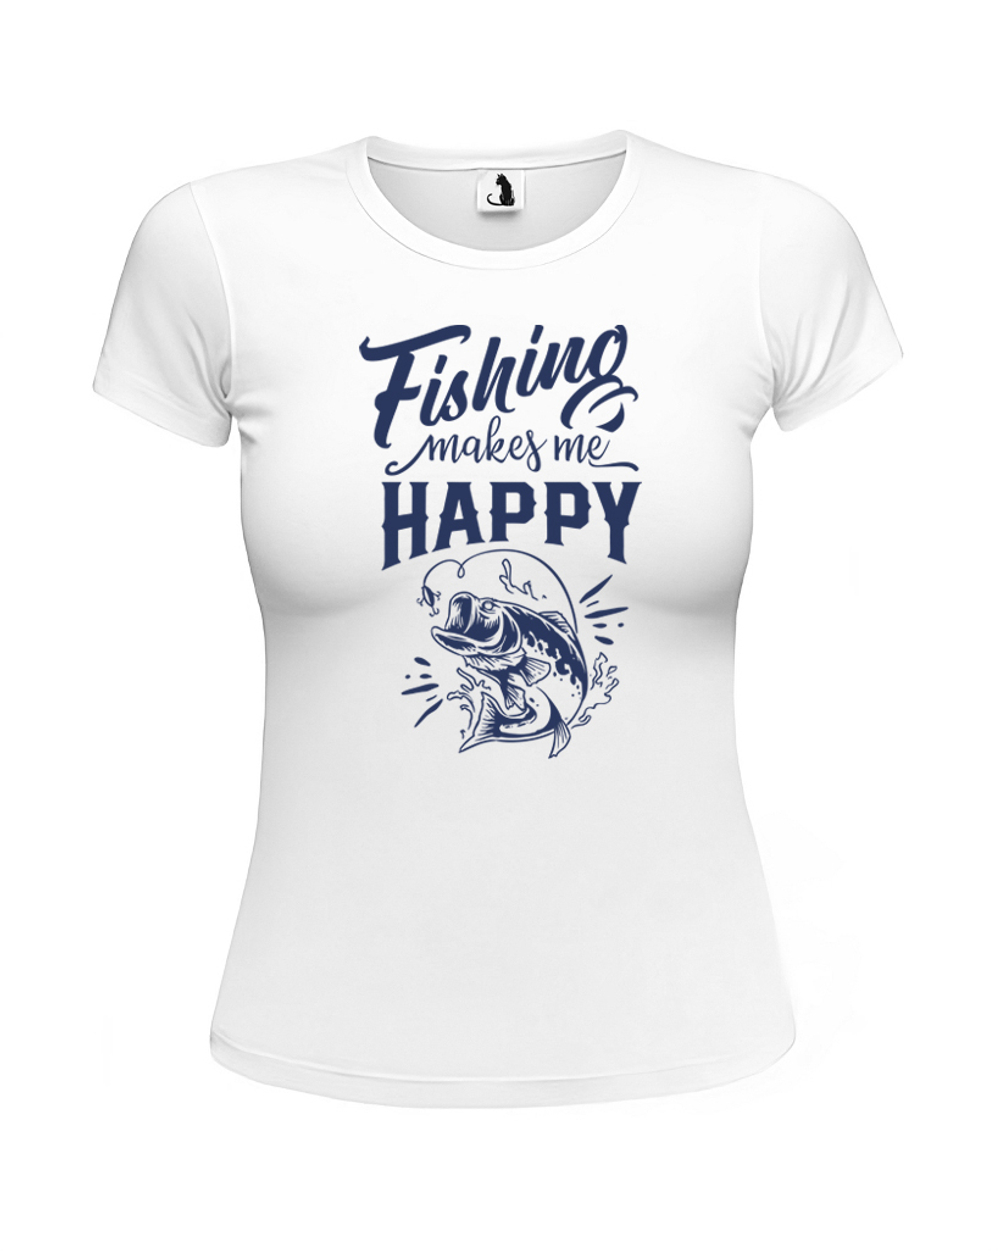 Футболка Fishing makes me happy женская приталенная белая с синим рисунком